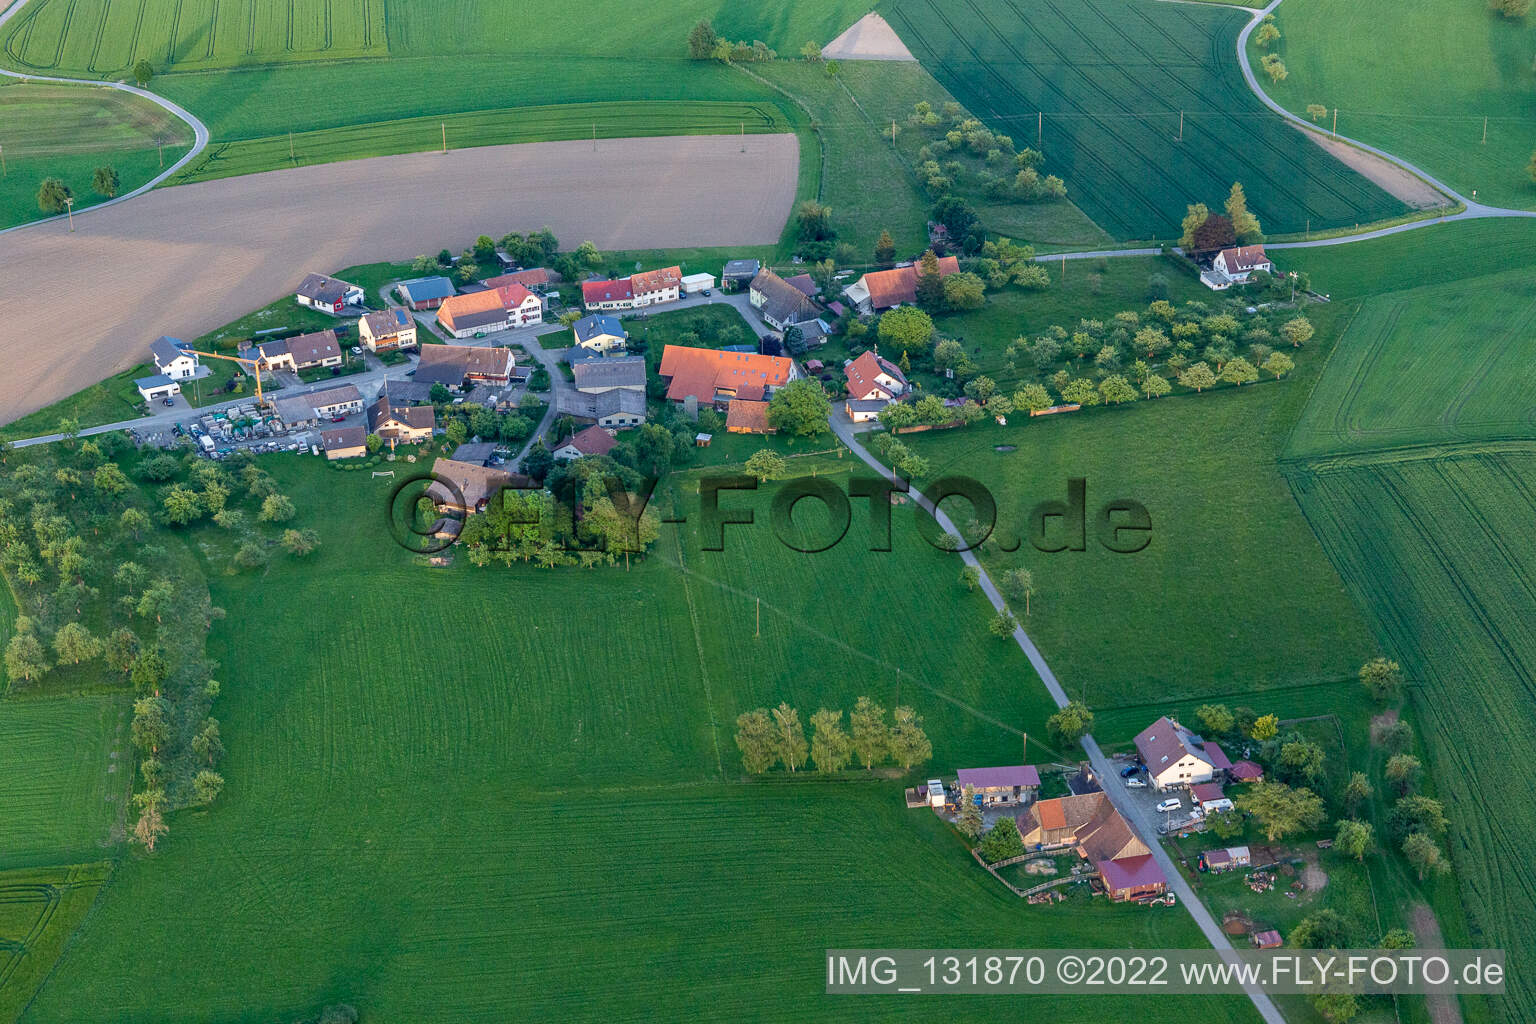 Luftbild von Gallmannsweil in Mühlingen im Bundesland Baden-Württemberg, Deutschland